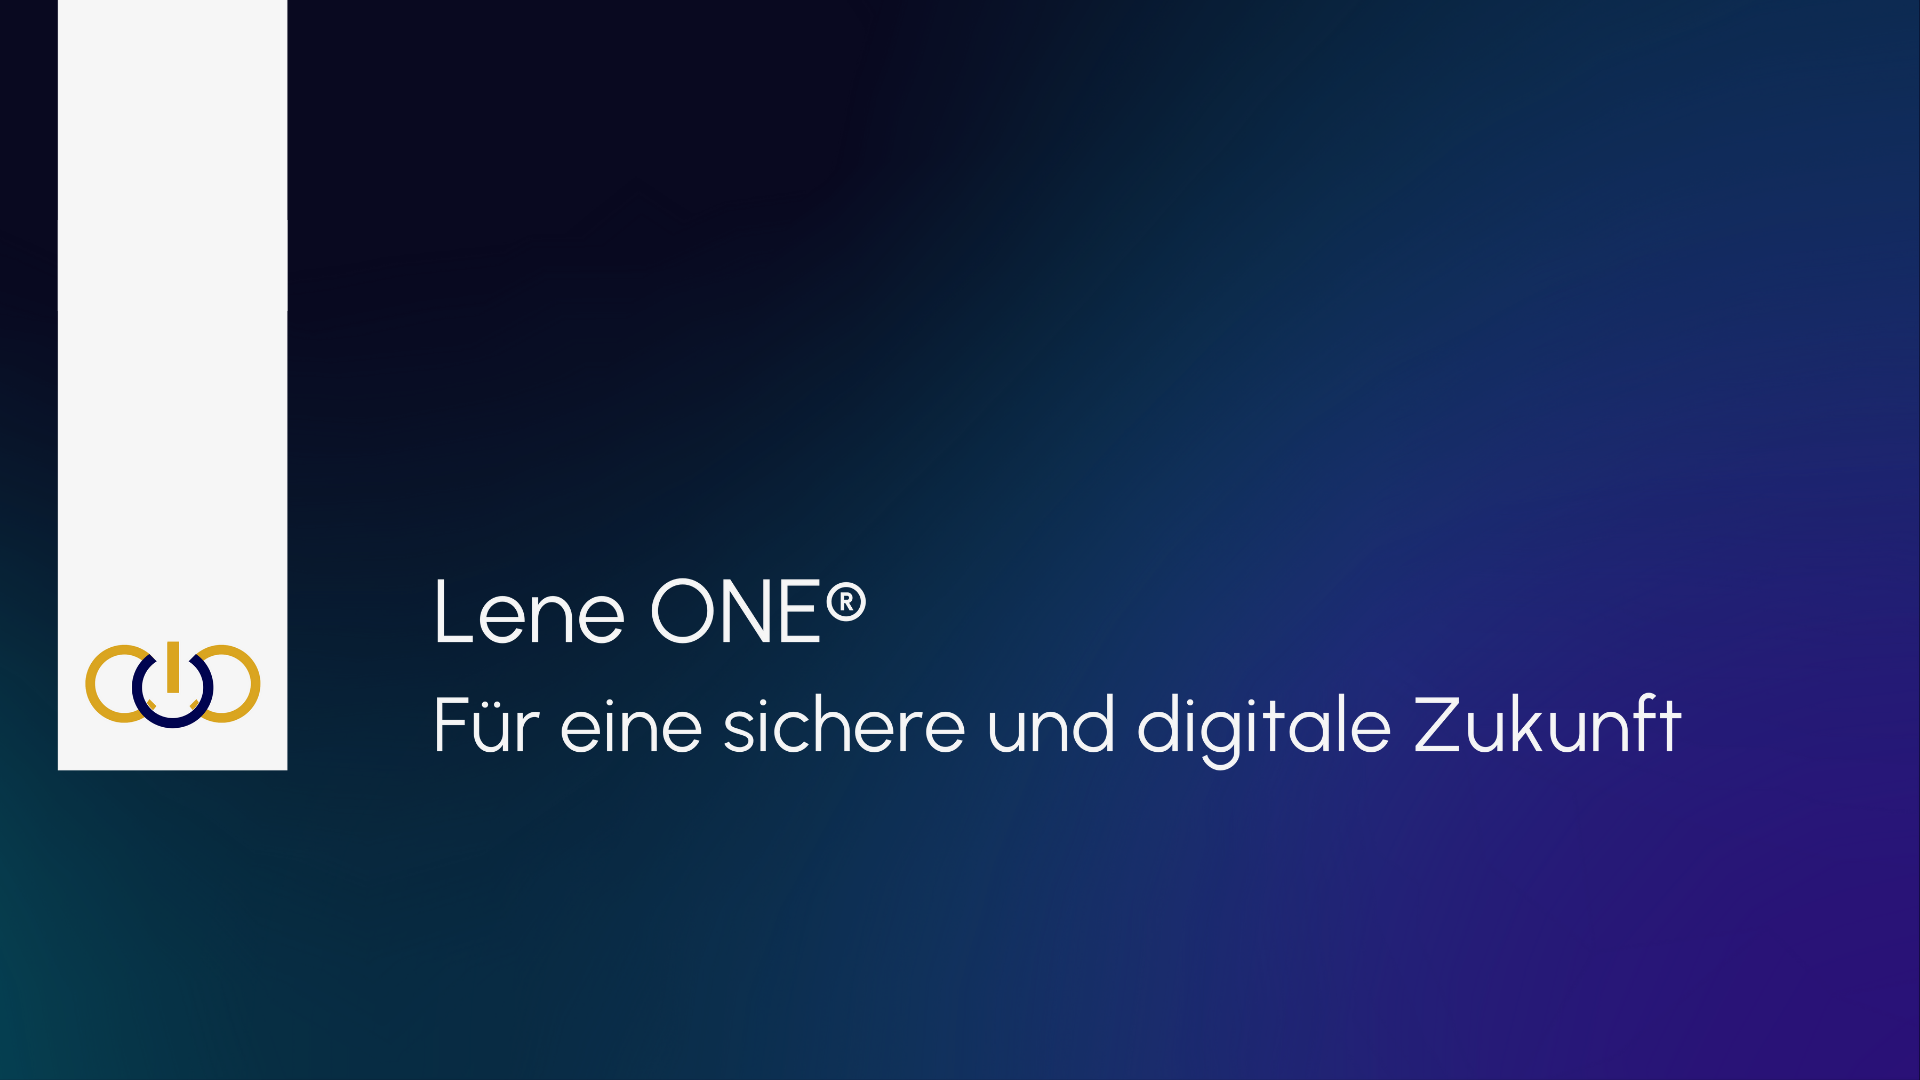 Lene ONE® / startup from Heilbronn / Background